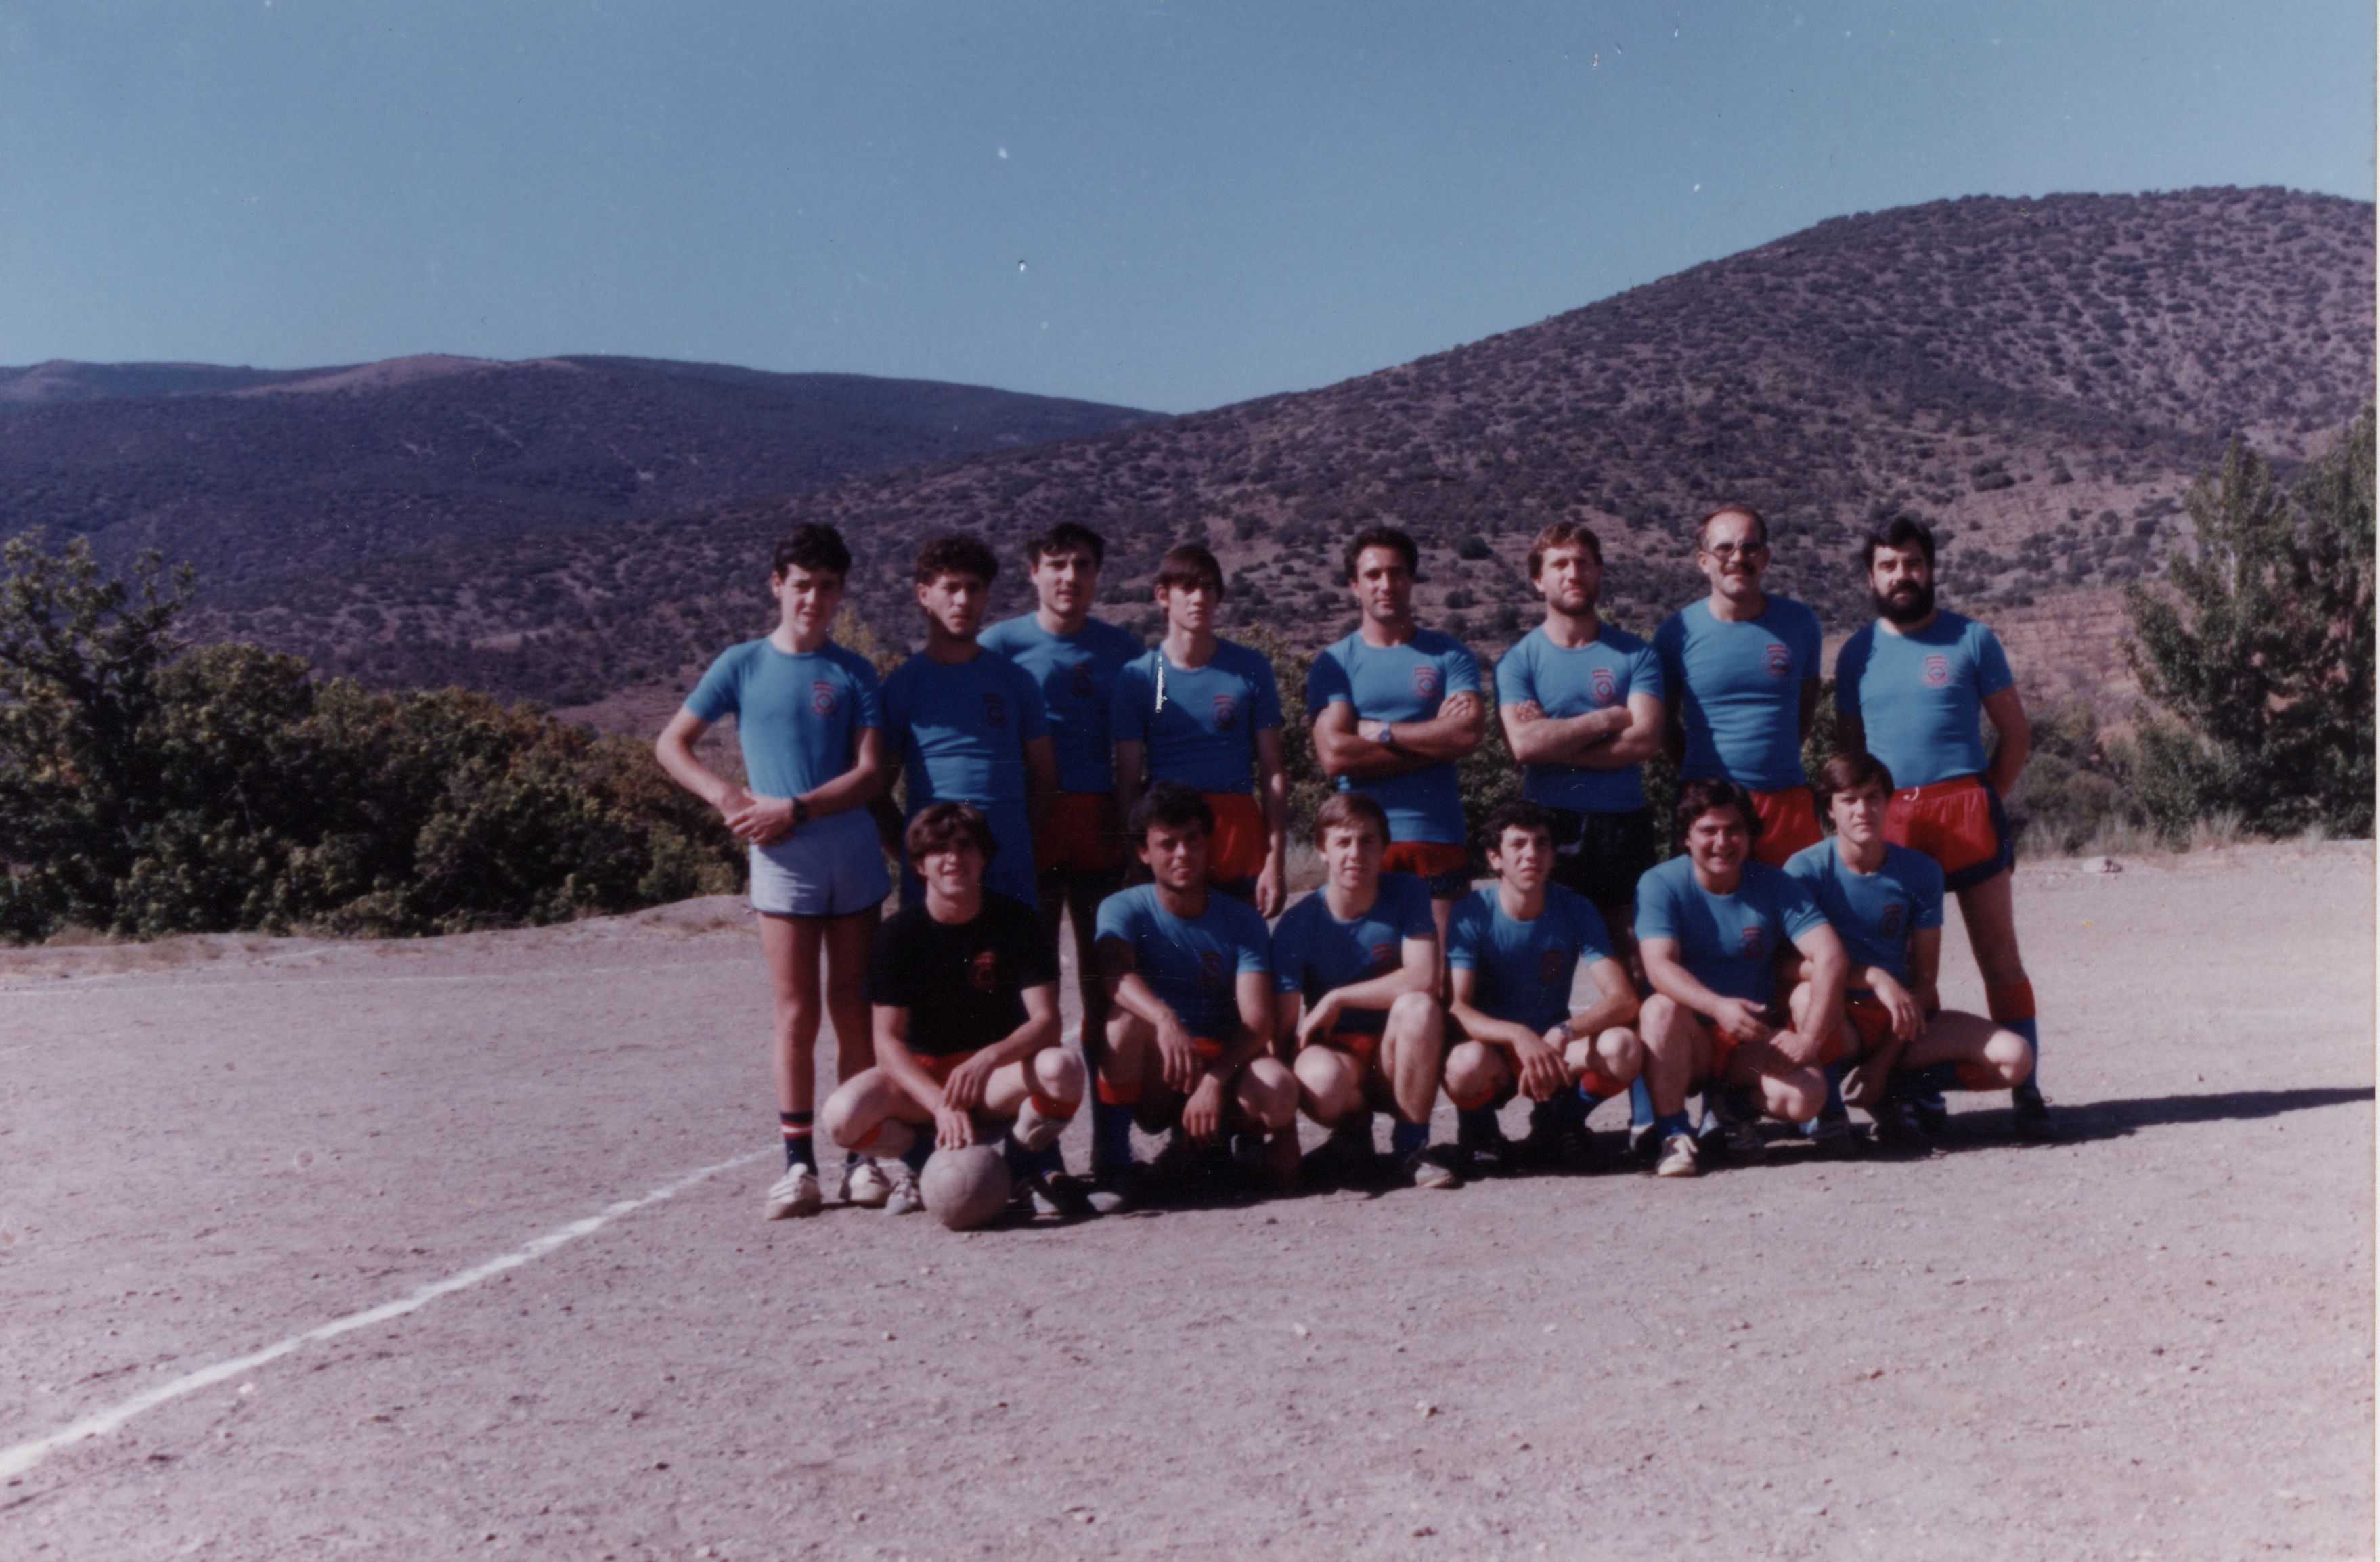 Futbol club Aldeire 1985